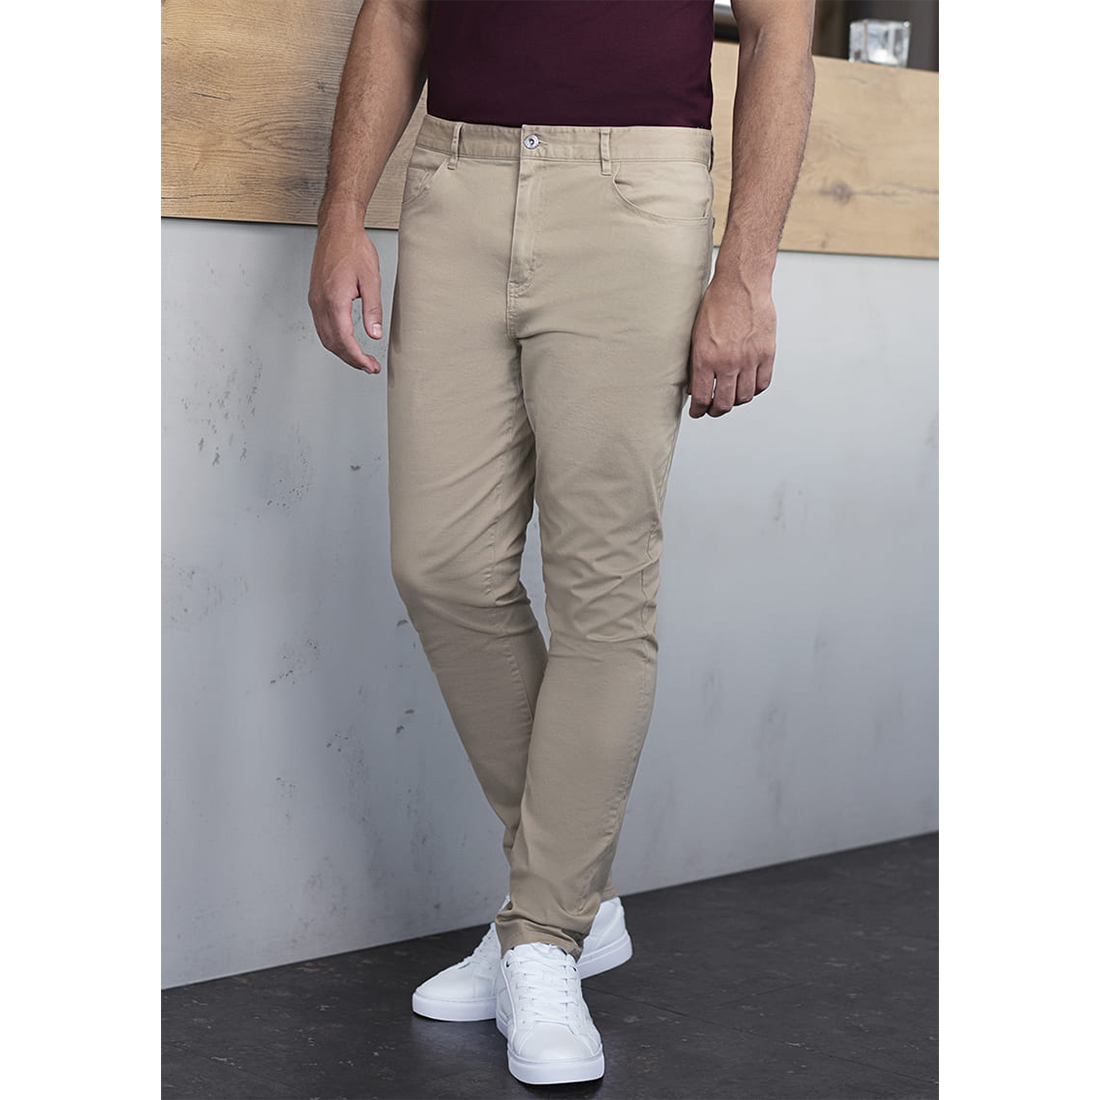 Pantalon pour homme 5-Pockets Classic-Stretch - Les vêtements de protection